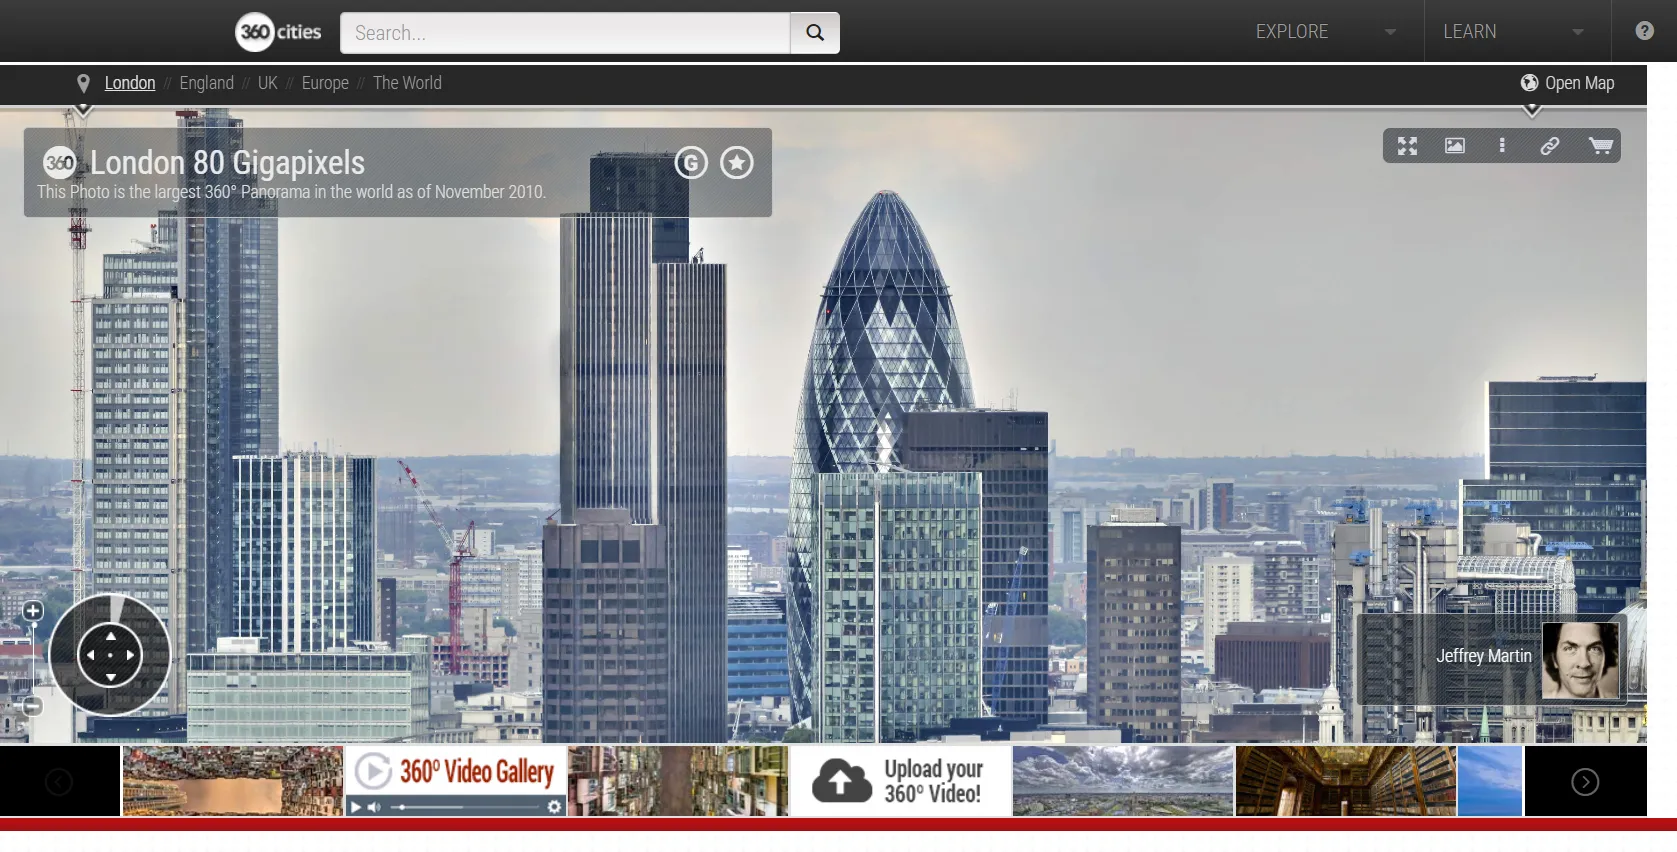 360 cities gigapixels London